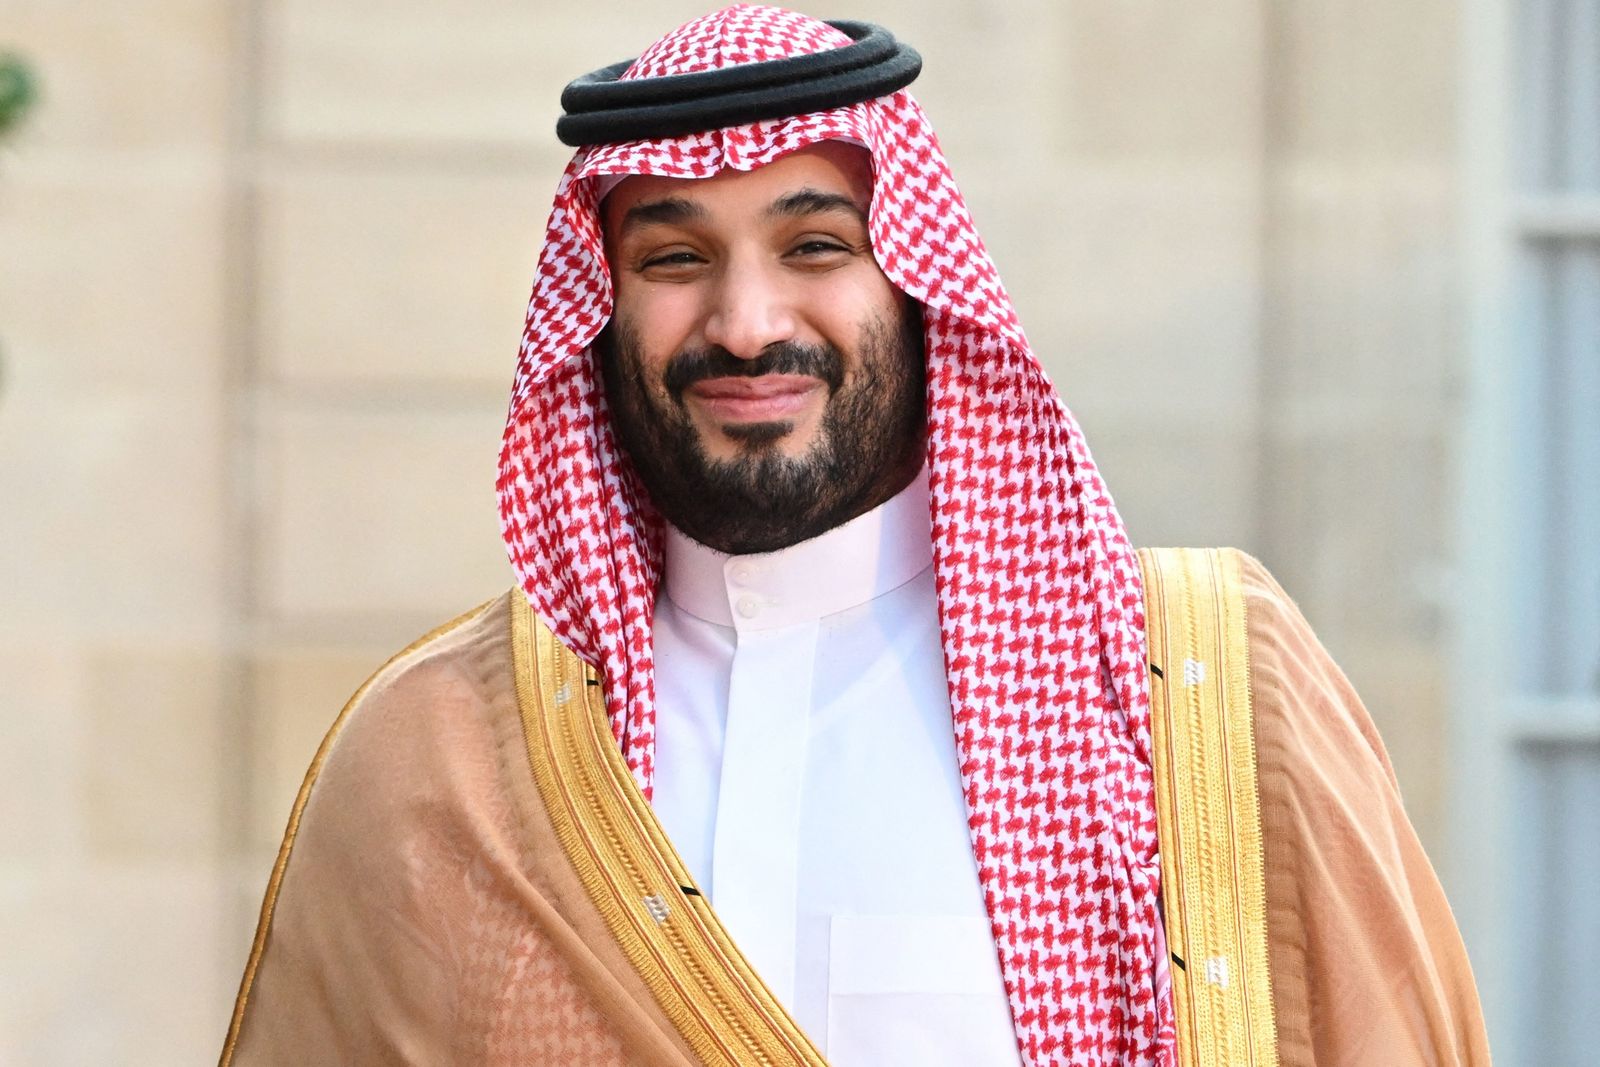 ولي العهد السعودي يطلق 4 مناطق اقتصادية خاصة بالمملكة لجذب الاستثمار الأجنبي